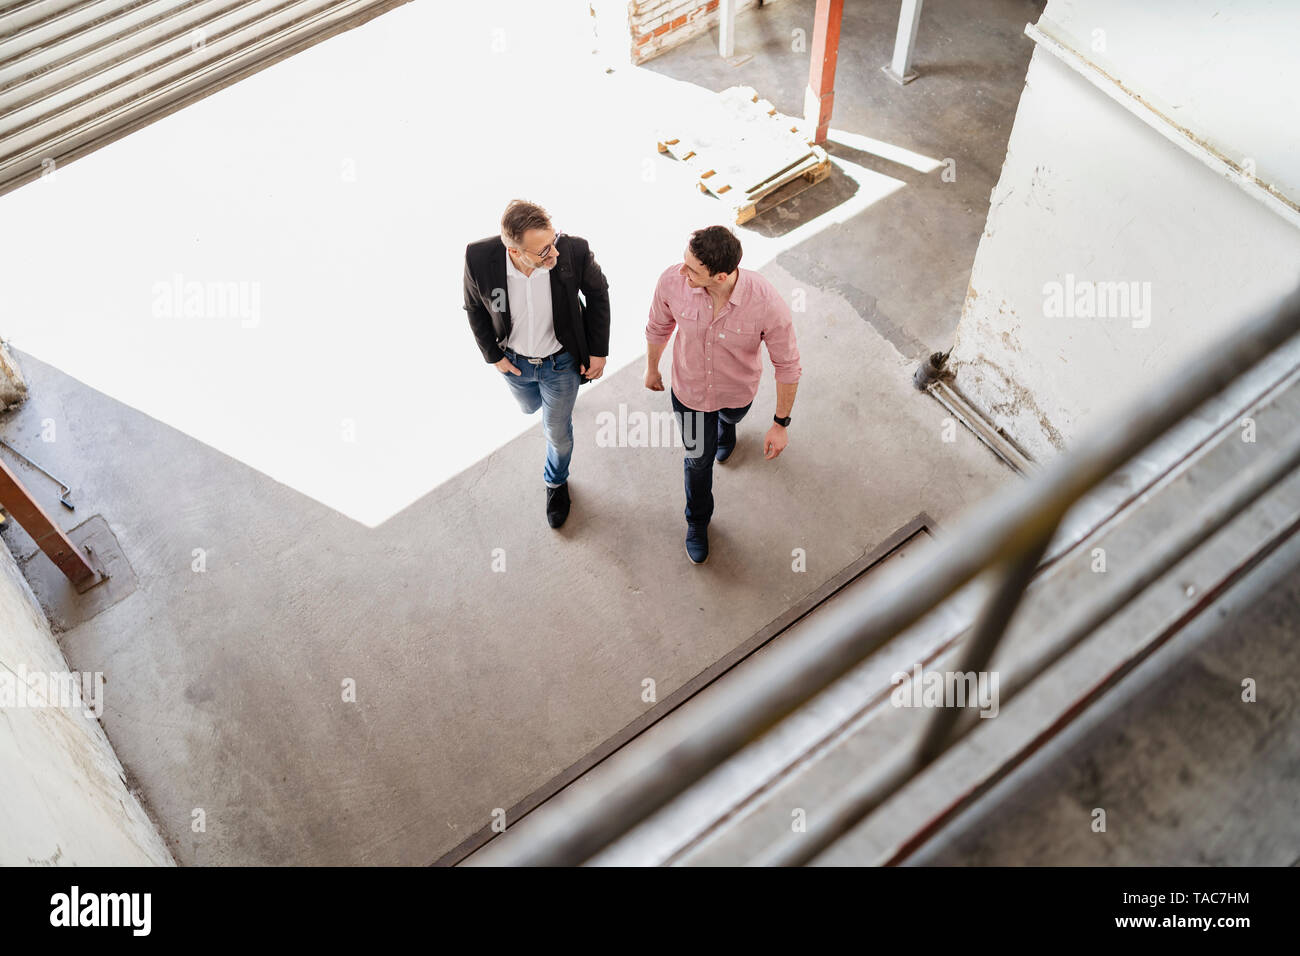 Vista de pájaro de dos hombres caminando en la bahía de carga en una fábrica Foto de stock